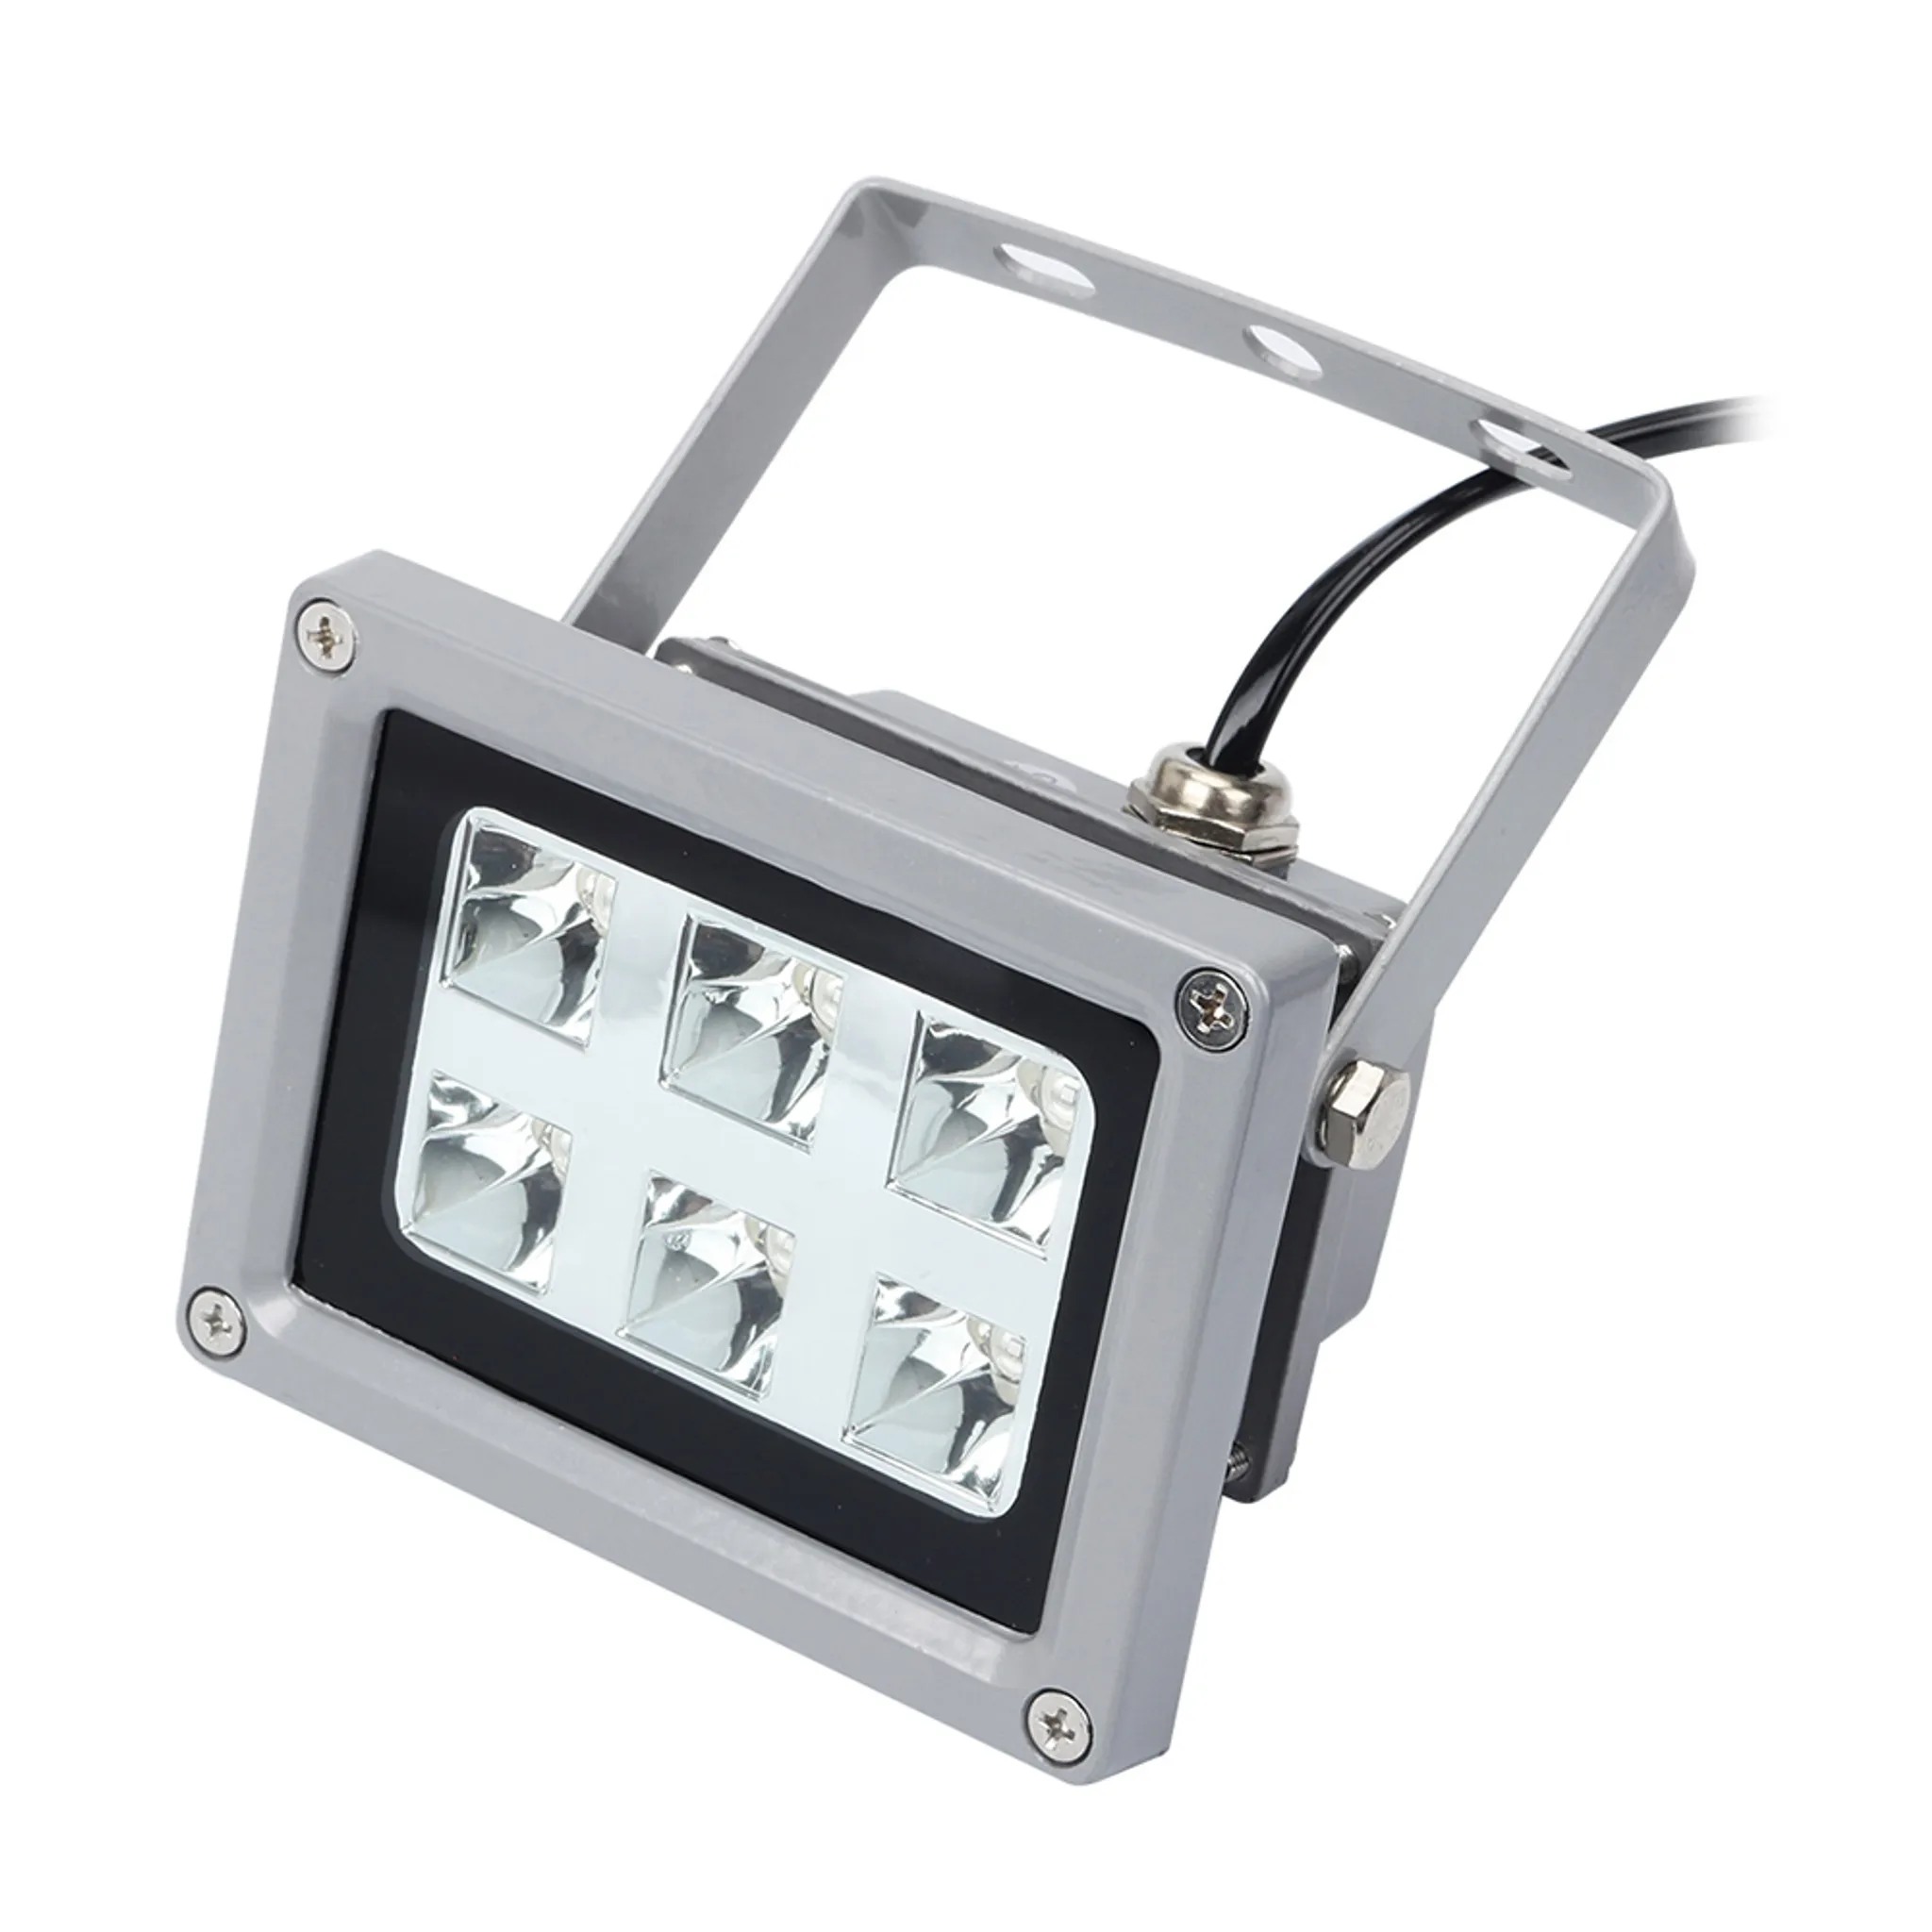 Leslaur UV-Harz-Lichthärtelampe für SLA/DLP 3D-Druckerzubehör verfestigen lichtempfindliches Harz 6pcs 405nm UV-LED-Lichter mit 60W Leistung beeinflussen 